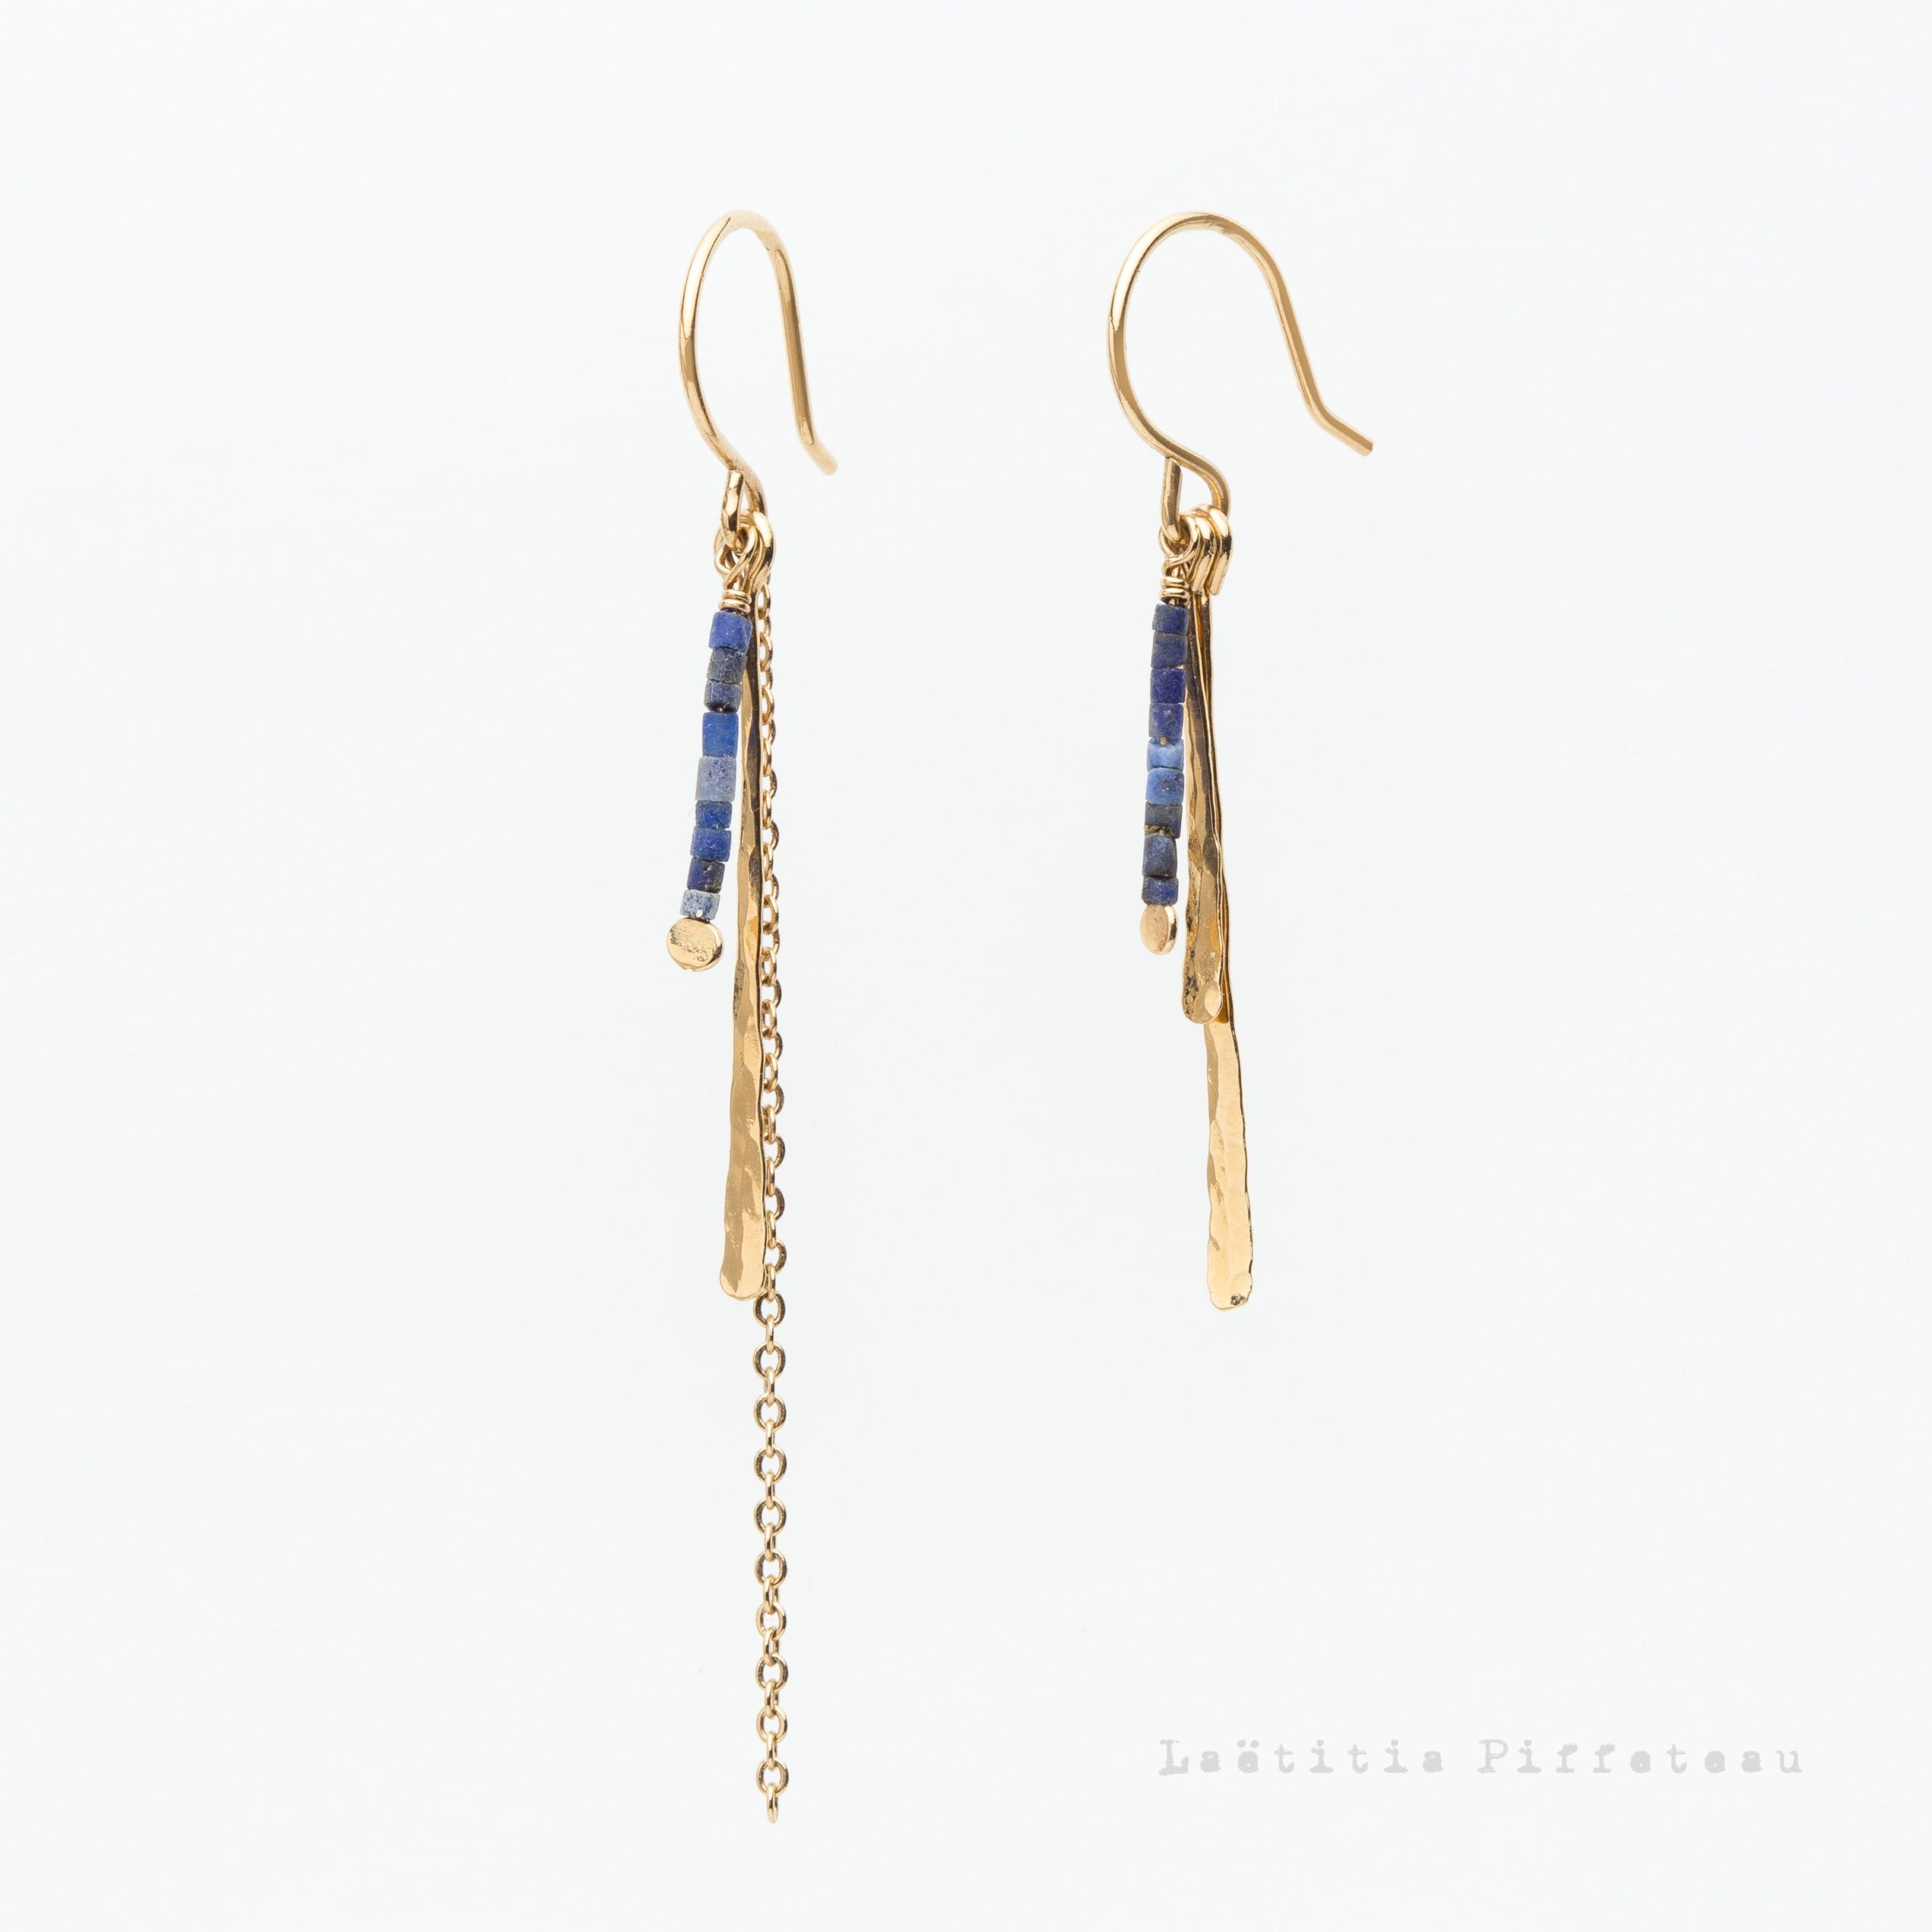 Boucles d'Oreilles LesLapis Asymétriques martelées, chaine et pierres naturelles lapis lazuli Laëtitia Piffeteau